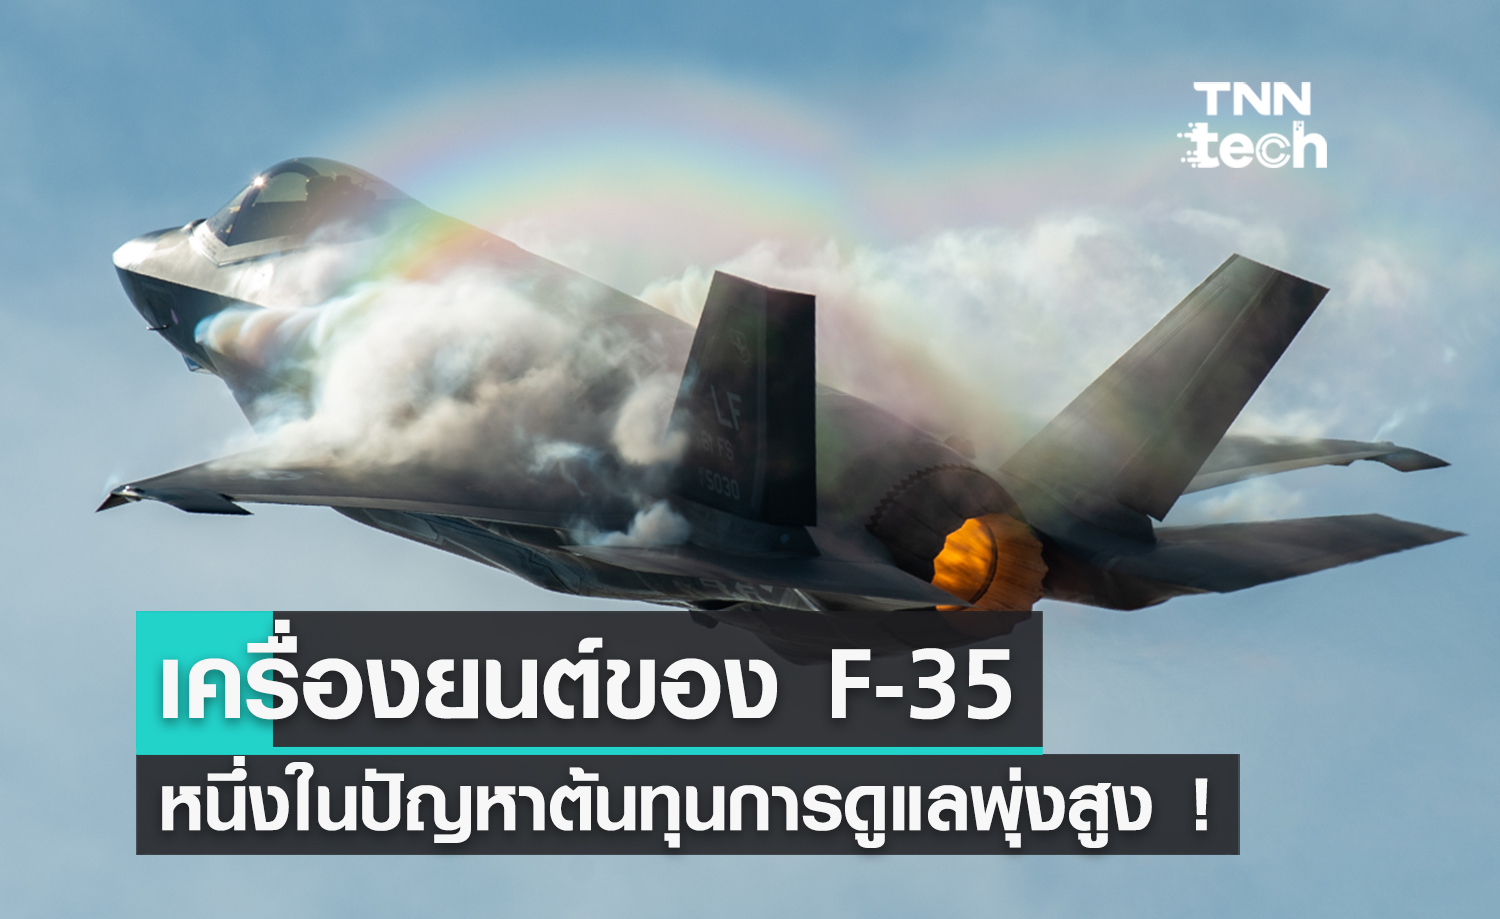 สหรัฐอเมริกา แก้ปัญหาเครื่องยนต์ F-35 หนึ่งในต้นตอที่ทำให้ต้นทุนการดูแล F-35 พุ่งสูง !